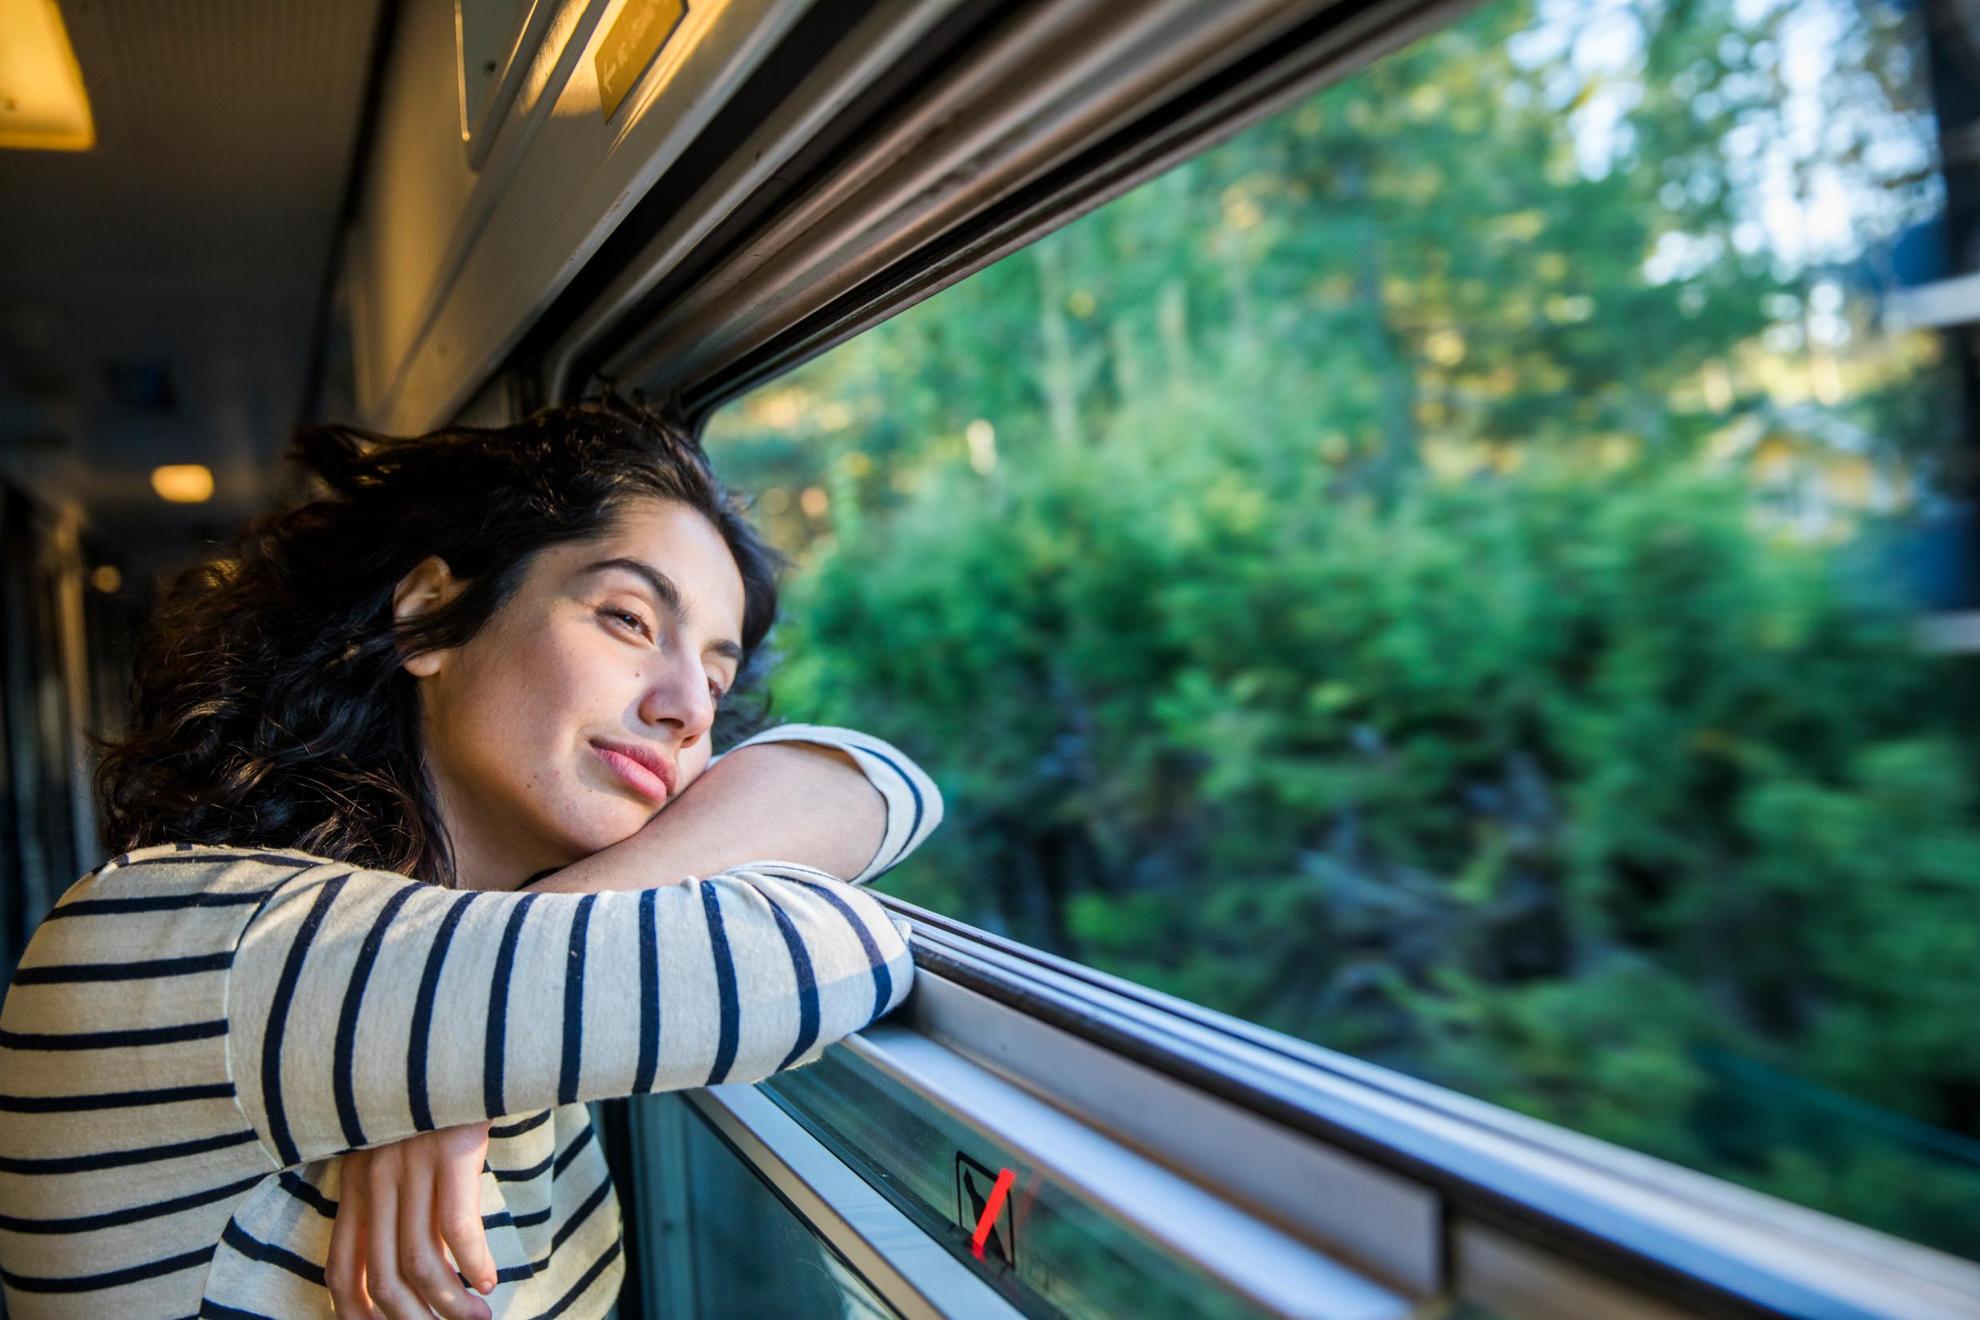 Une femme est dans un train et regarde à travers la fenêtre des arbres et de la verdure.